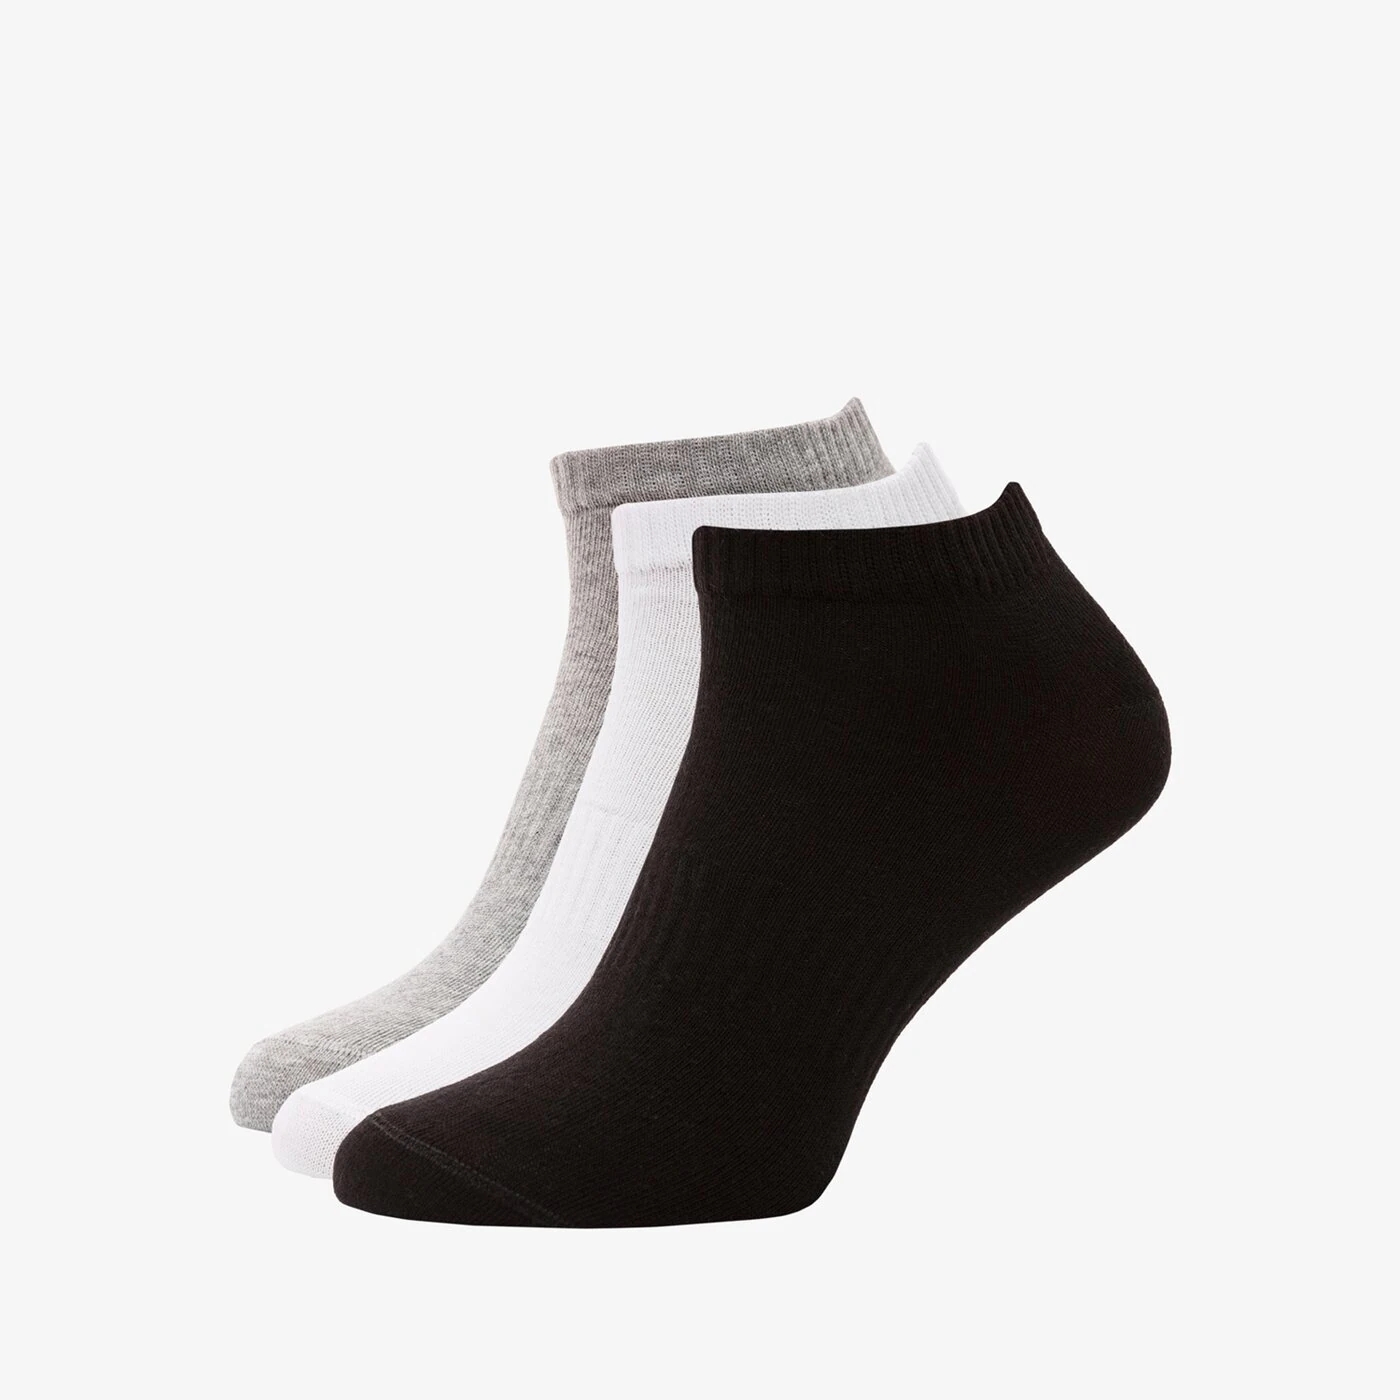 Носки Umbro Sneaker II микс, 3 пары, серый / черный / белый